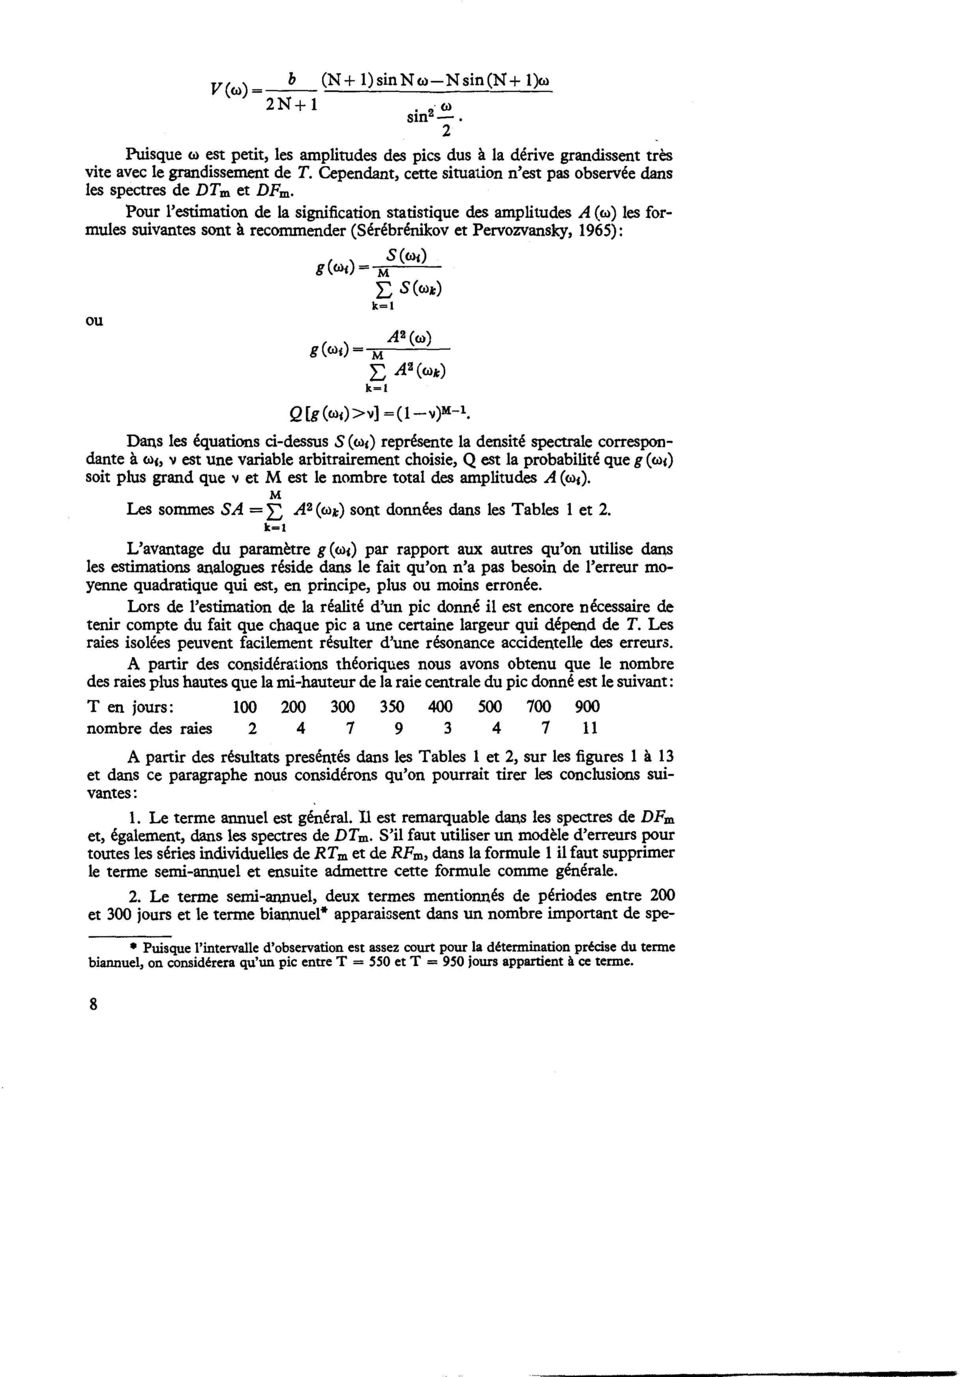 Pour l'estmaton de la sgnfcaton statstque des ampltudes A (w) les formules suvantes sont a recommender (Serebrenkov et Pervozvansky, 1965): ou gw( () S(w() =M E S(C).